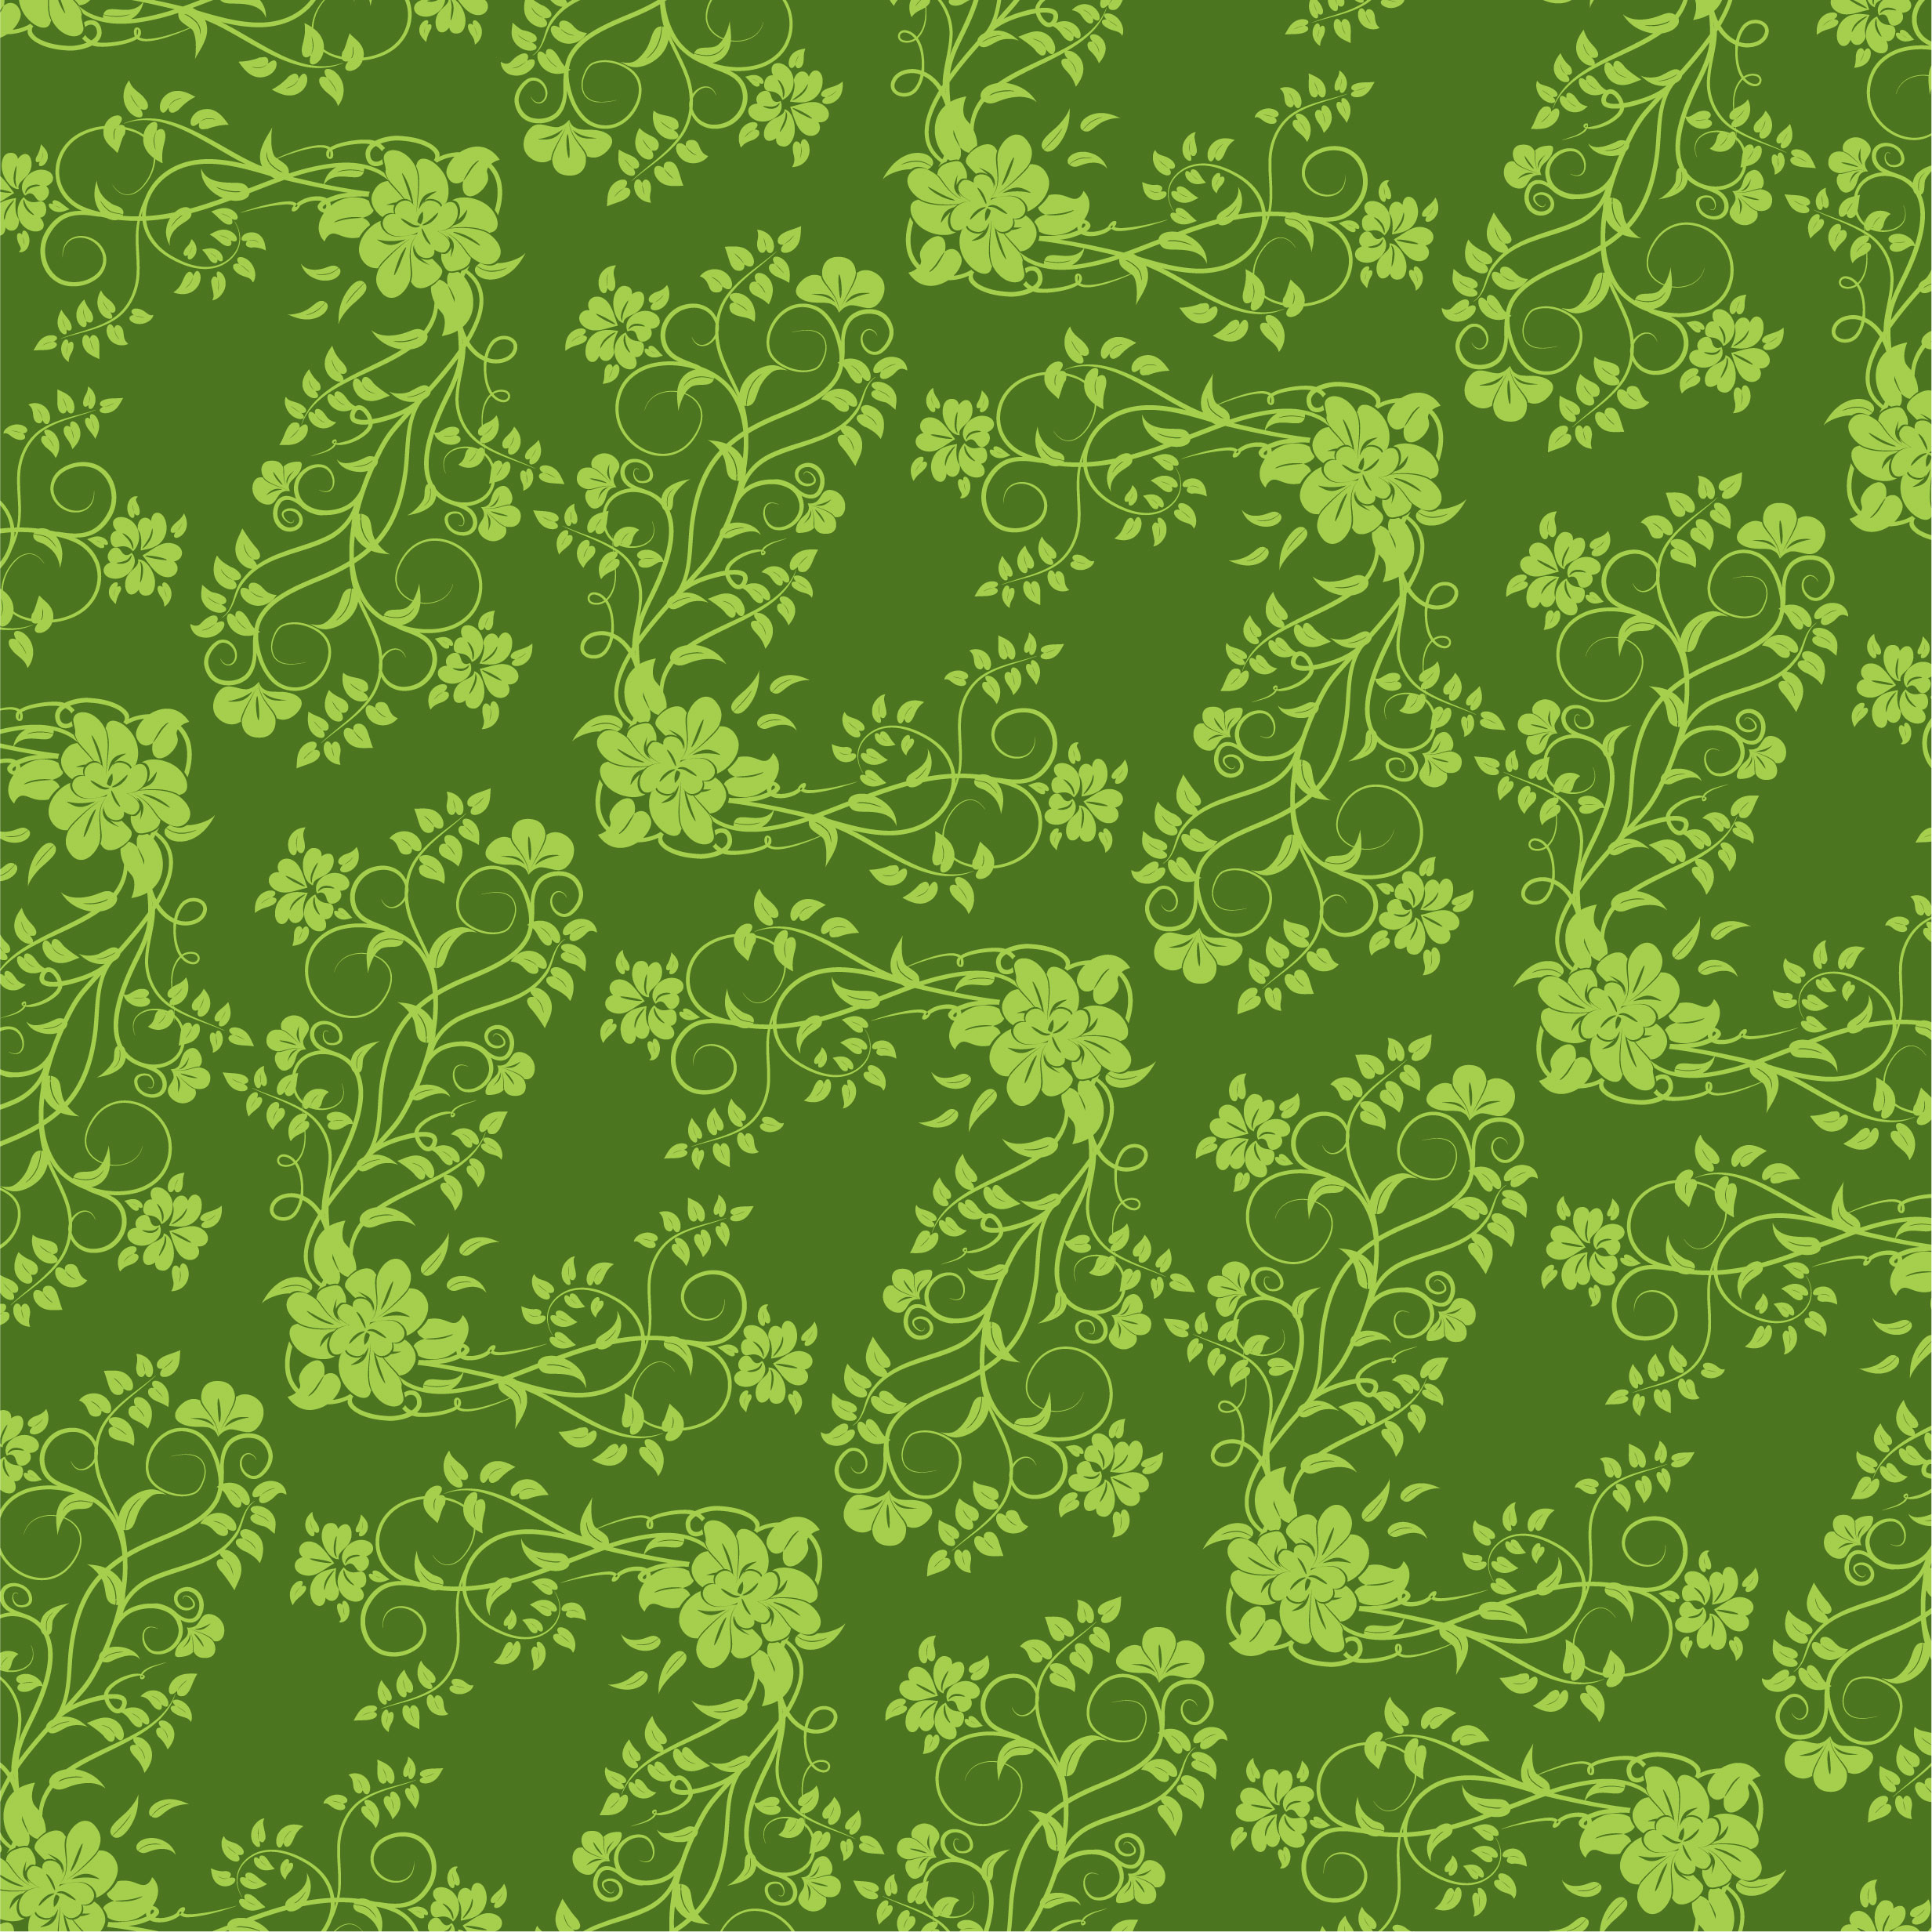 壁紙 背景イラスト 花の模様 柄 パターン No 2 緑 茎葉